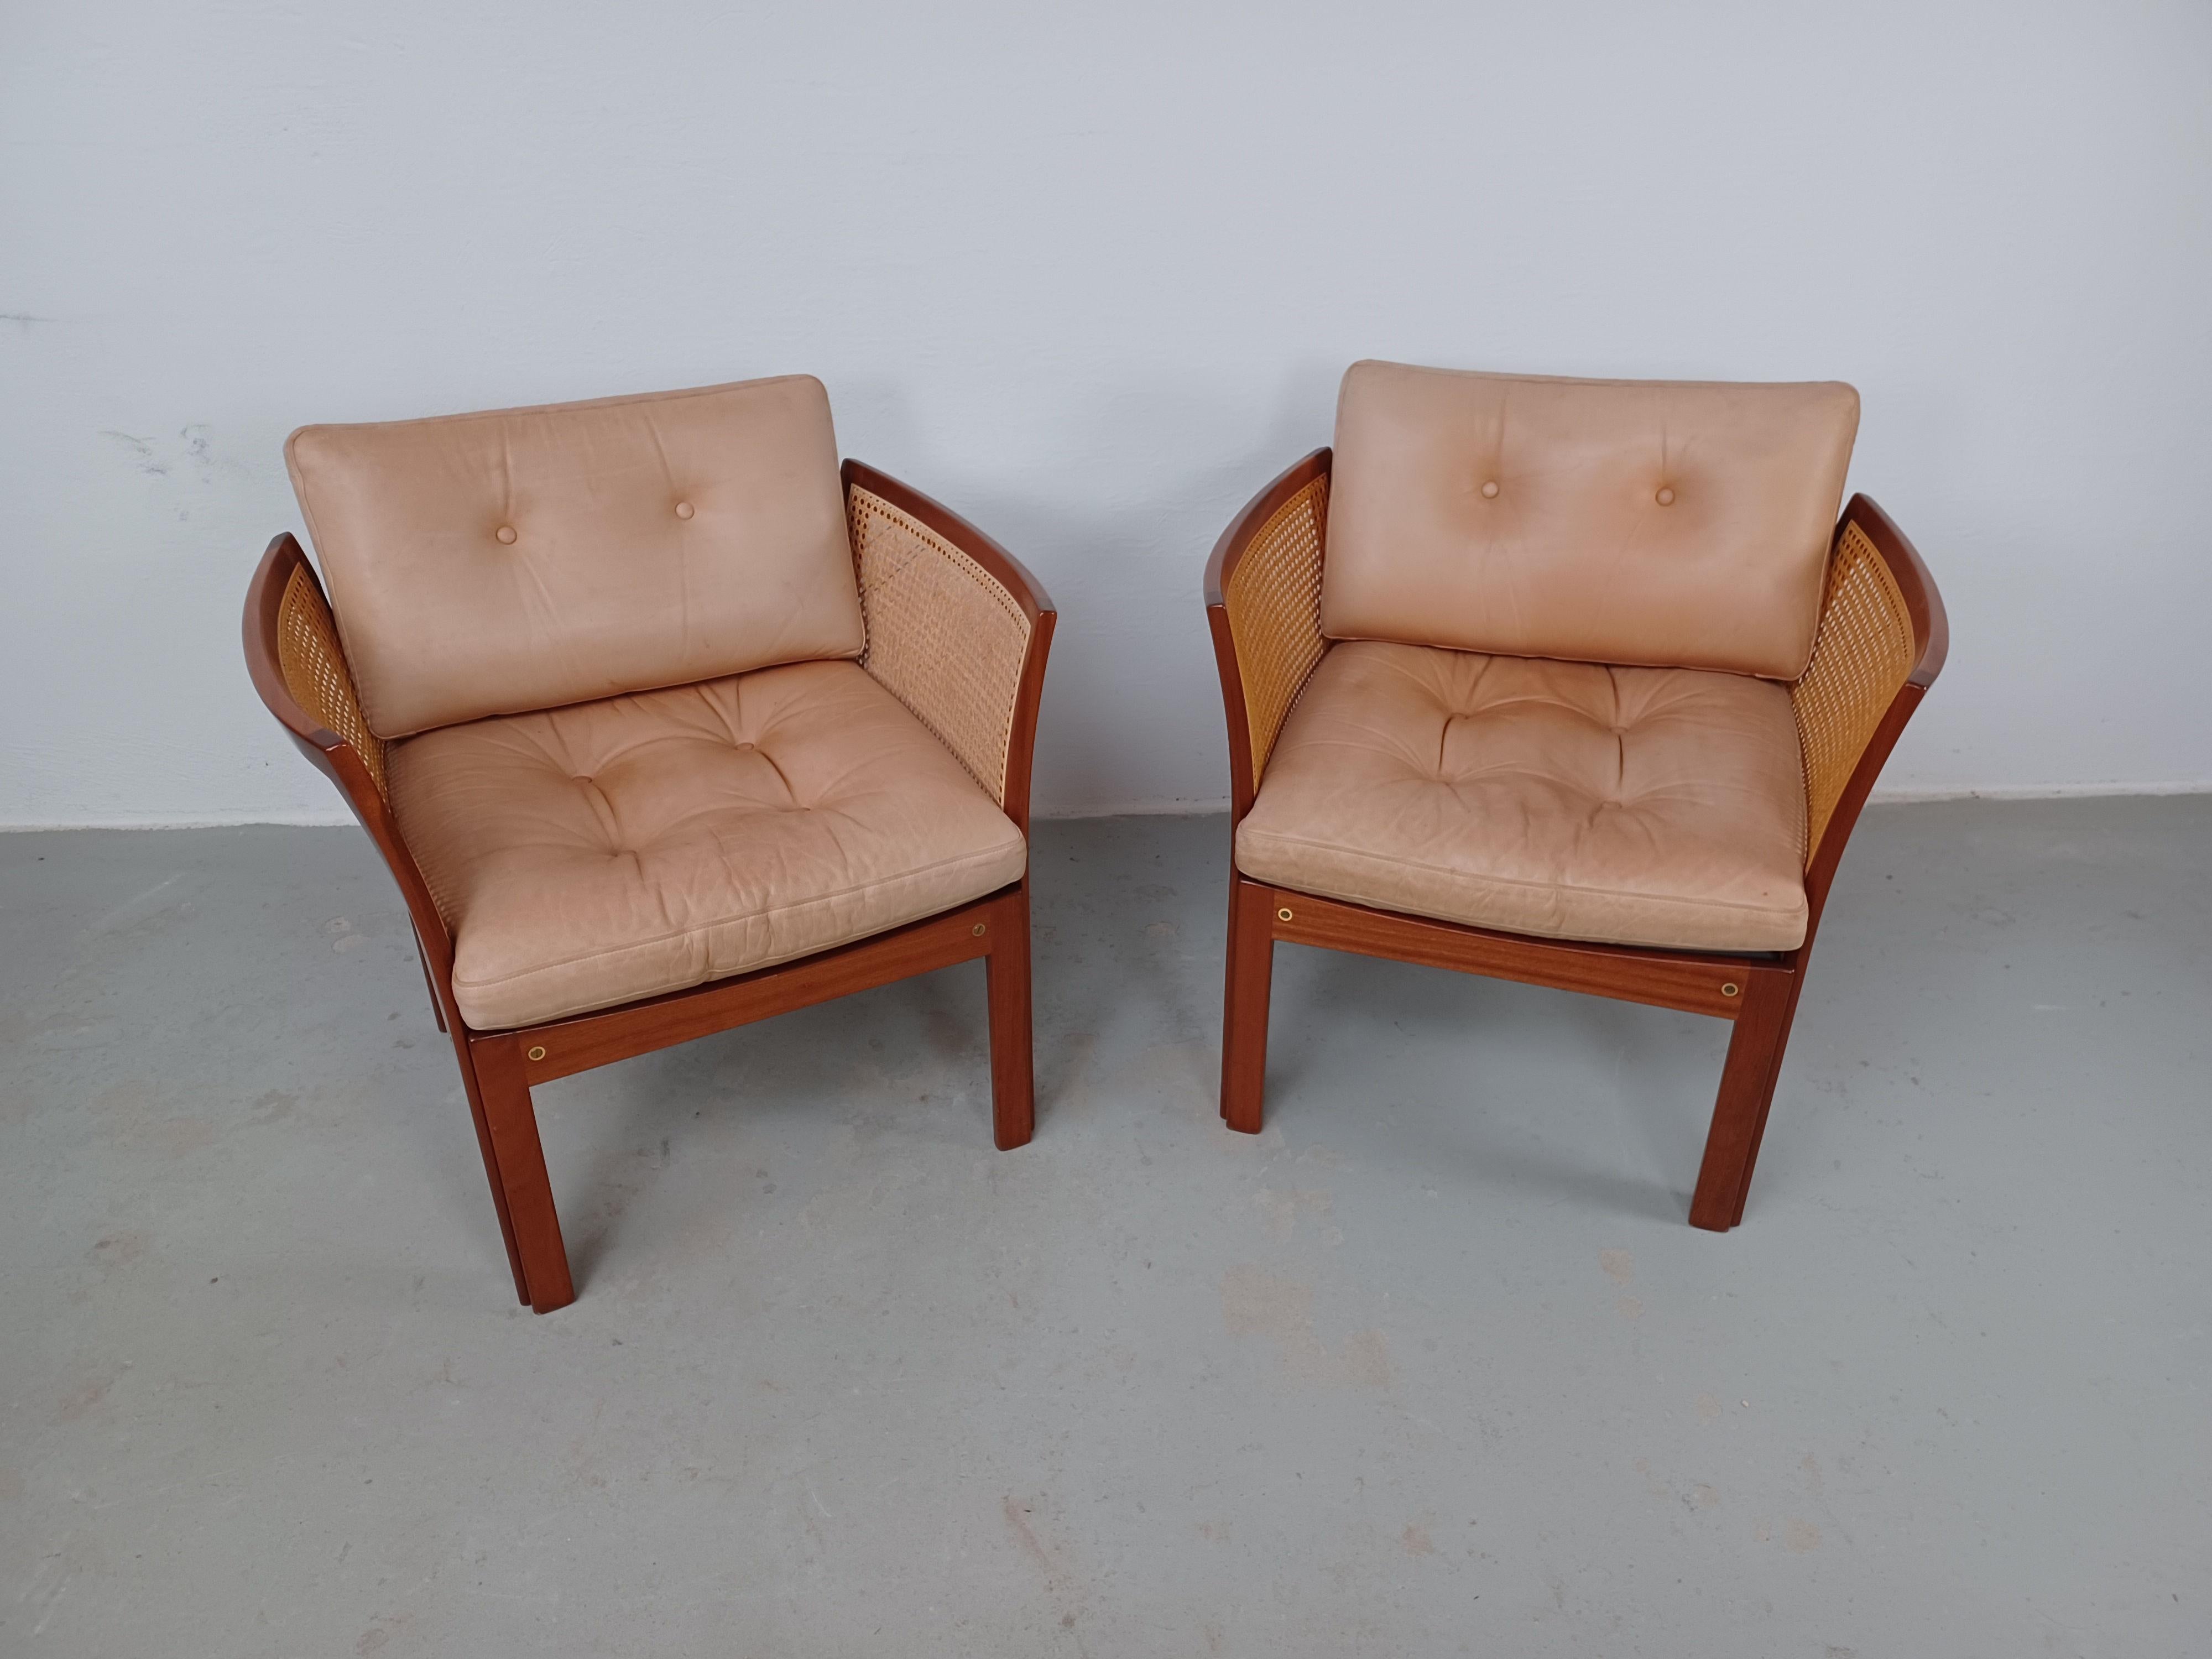 1960er Satz von zwei Illum Vikkelso Plexus Sesseln aus Palisanderholz von CFC Silkeborg

Die Plexus-Stuhlserie, bestehend aus einem Sessel, einem Sofa, einem Couchtisch und einem Beistelltisch, wurde in den 1960er Jahren von Illum Wikkelsø entworfen